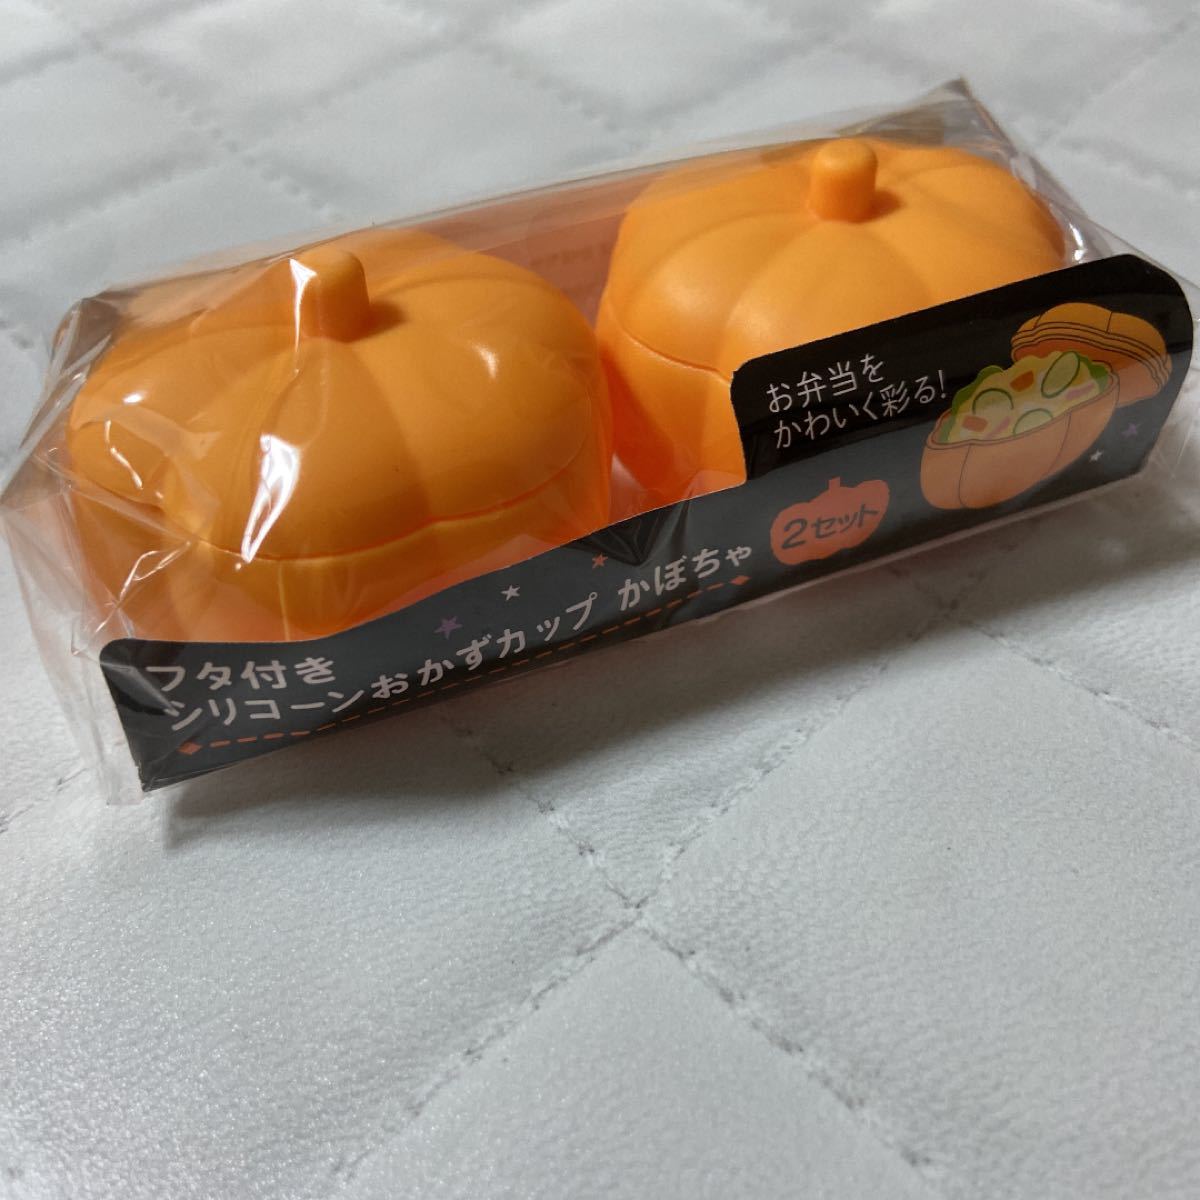 ハロウィンお弁当グッズ☆蓋付きシリコーンおかずカップかぼちゃ型